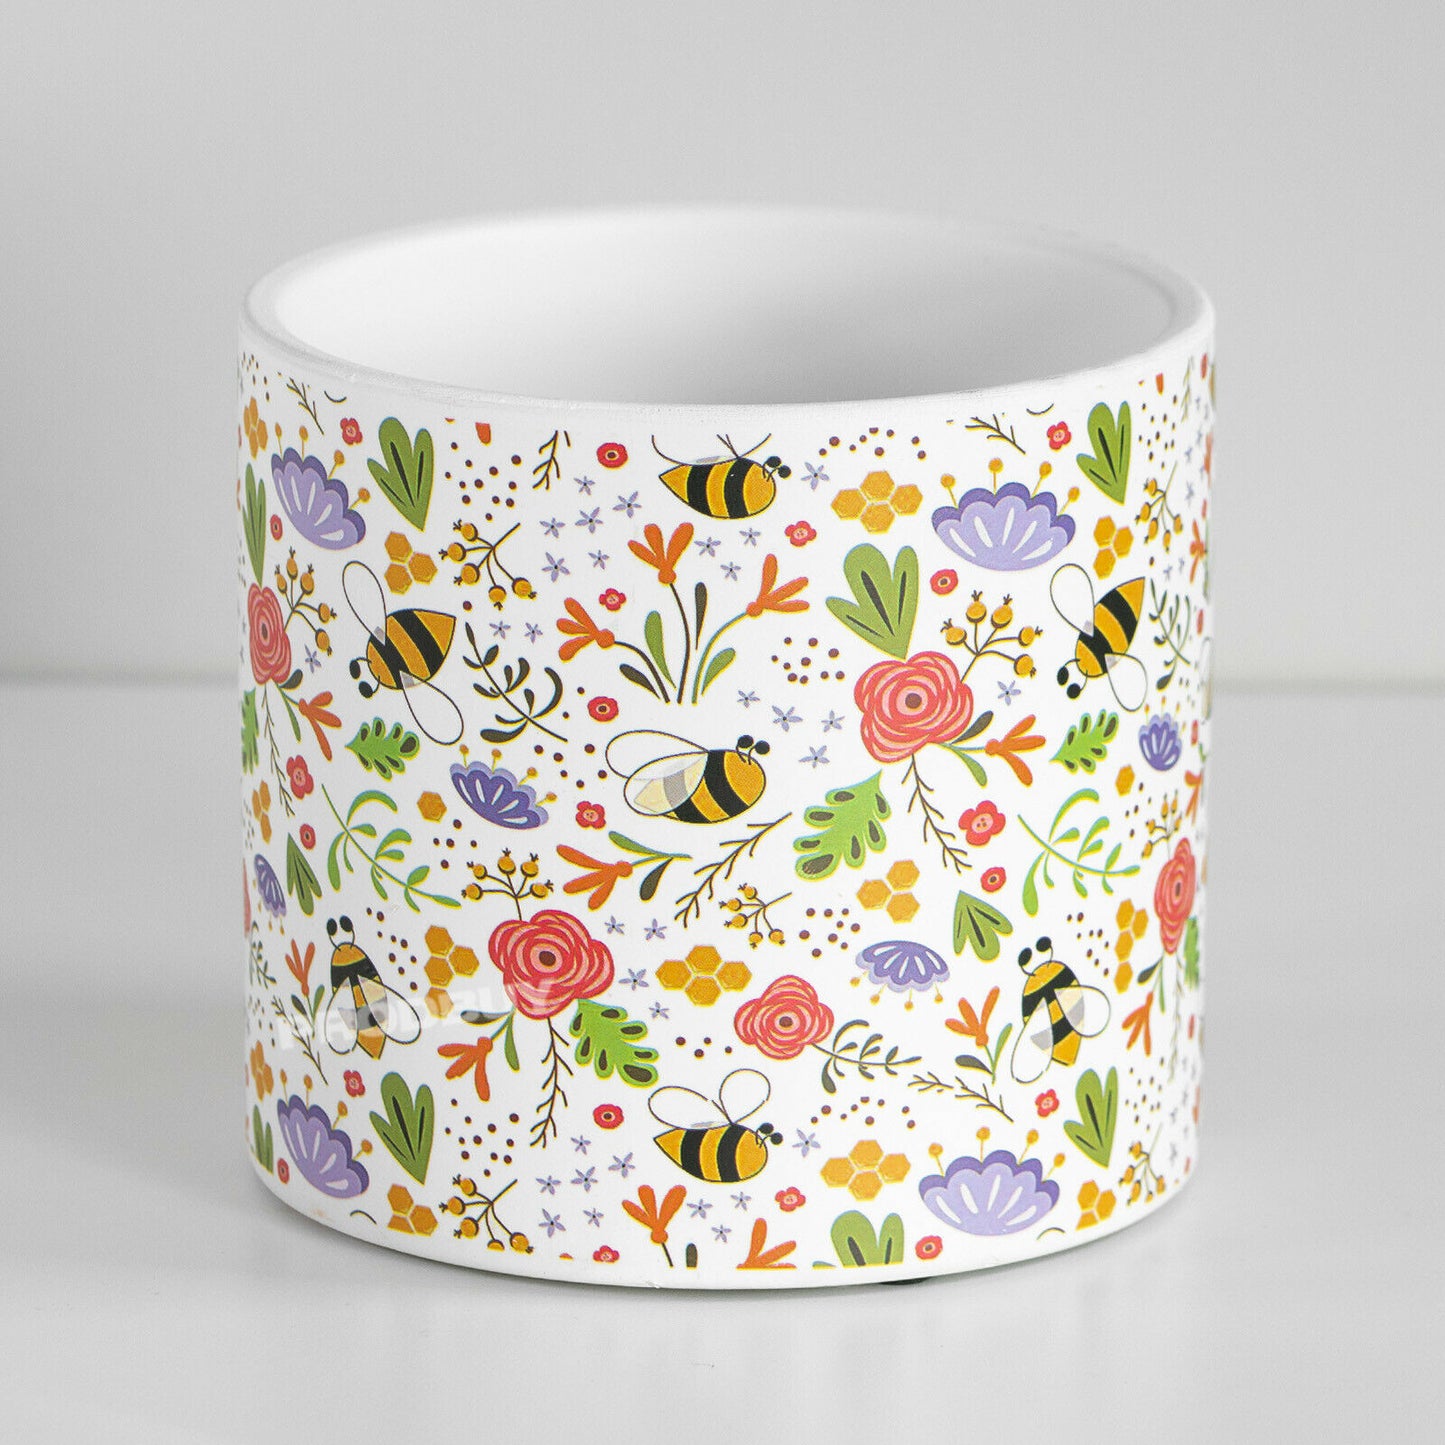 Floral Bees 13.6cm Plant Pot Medium White Ceramic Indoor Cover